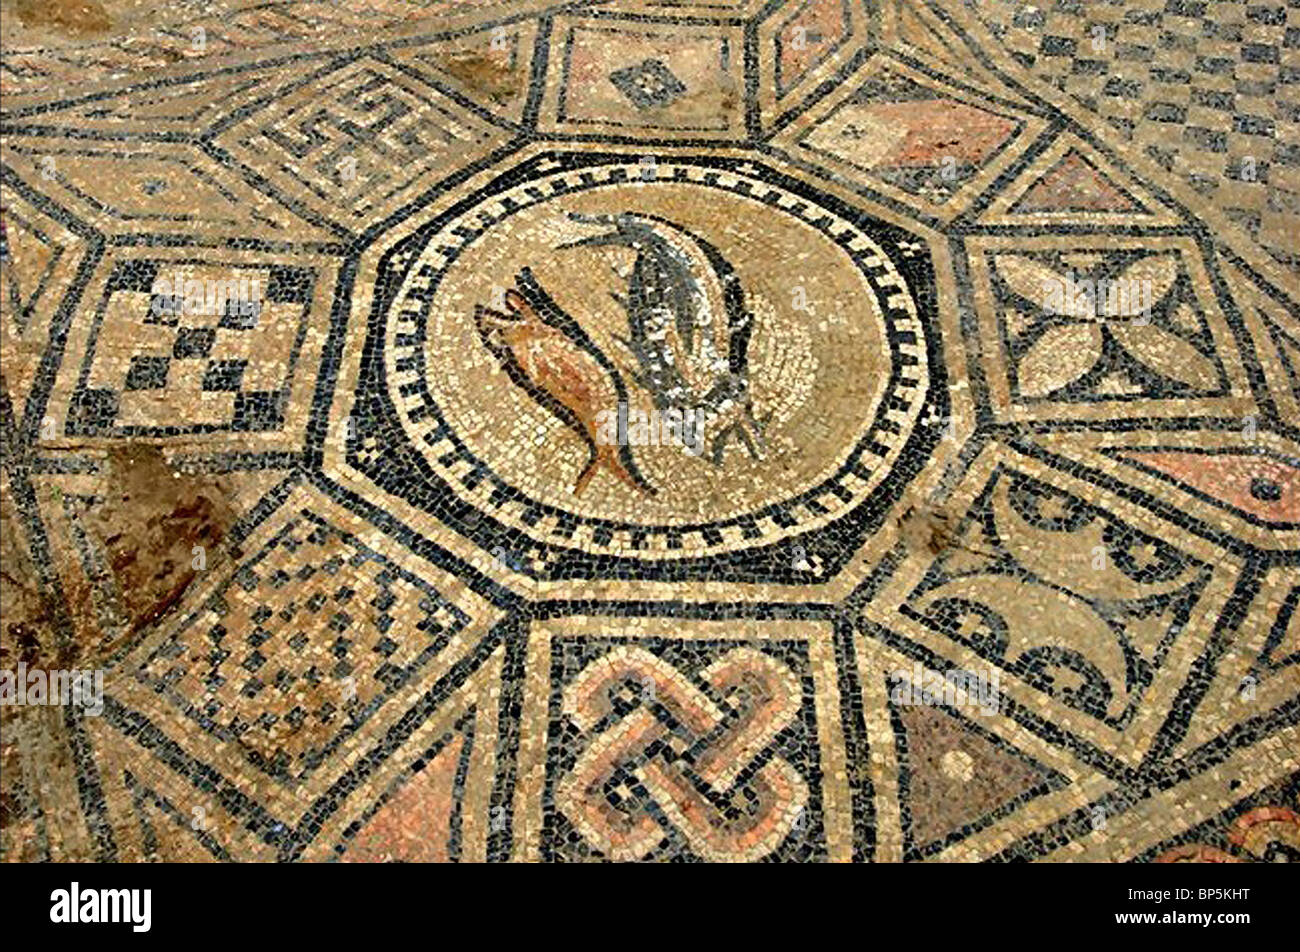 Mozaic étage de peut-être la plus ancienne église chrétienne en Terre Sainte datant de c. 3ème. C. L'église est situé près de Megiddo Banque D'Images